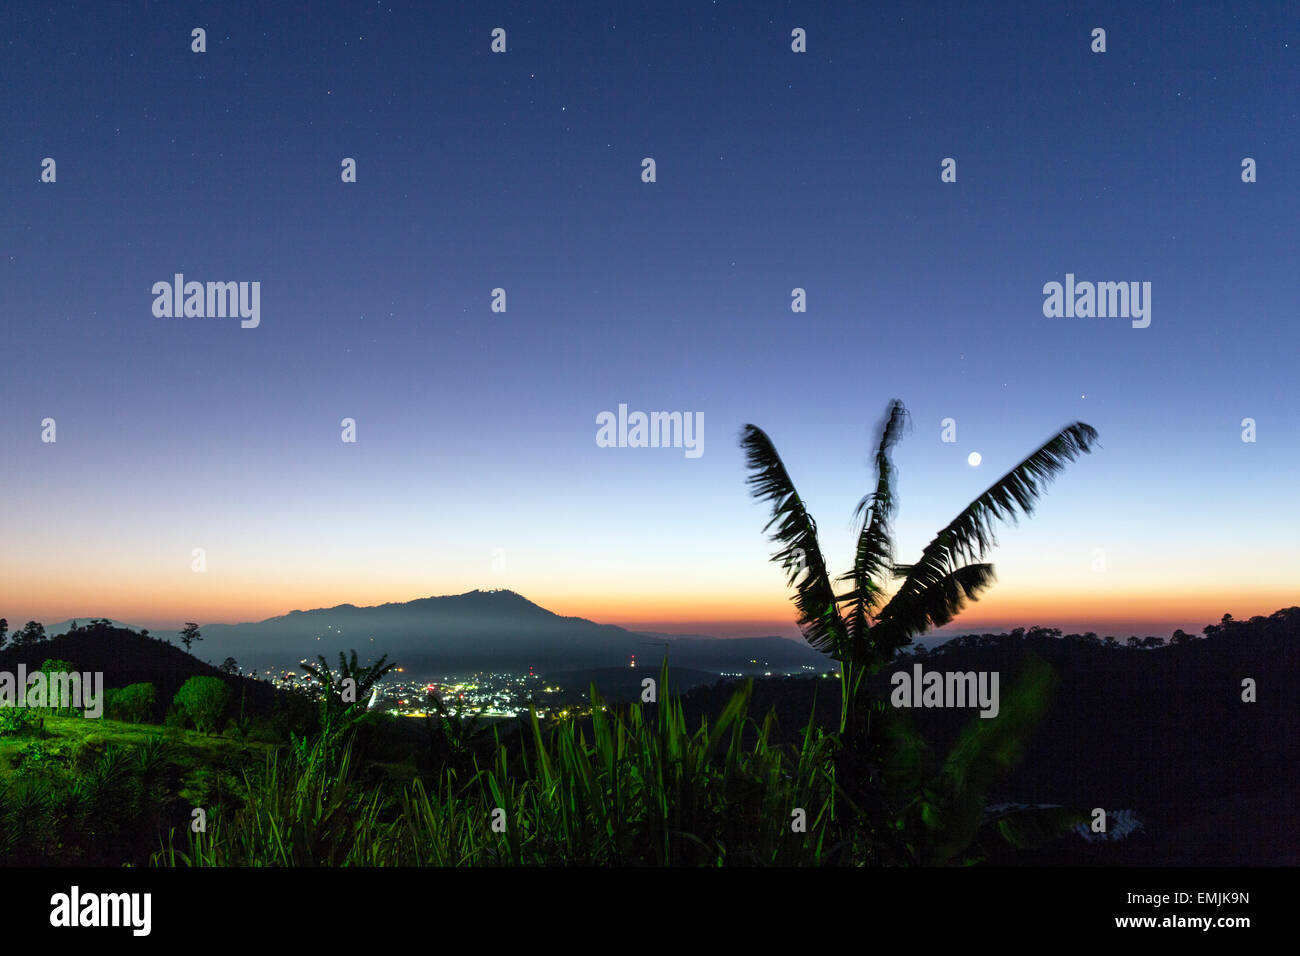 Guatemala,Jalapa,dawn avec lune et étoiles Banque D'Images